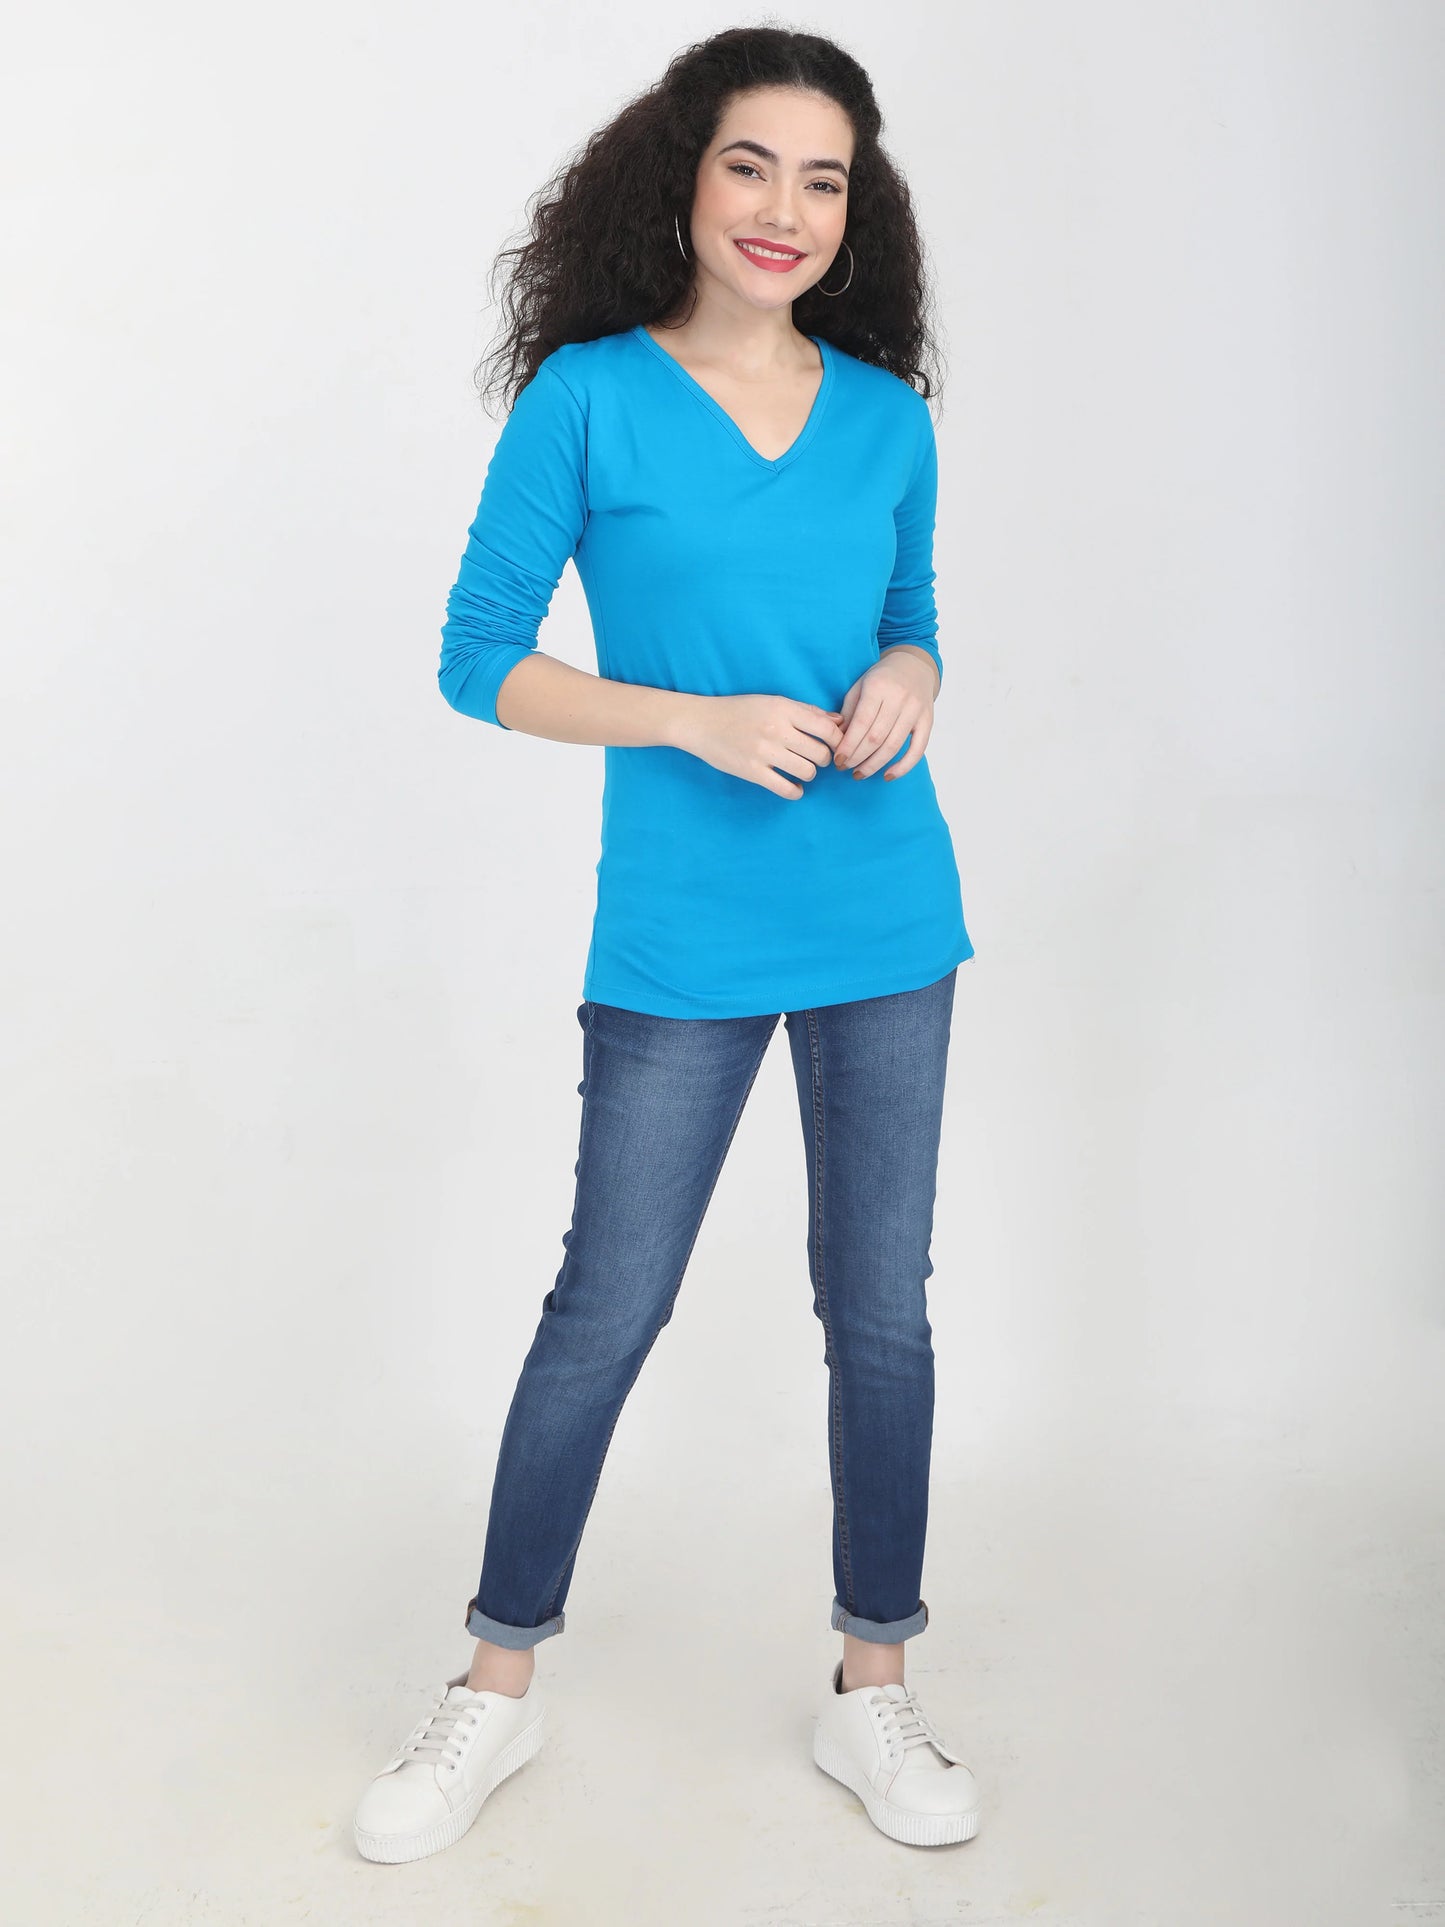 Women's Cotton Plain V Neck Full Sleeve Blue Color T-Shirt